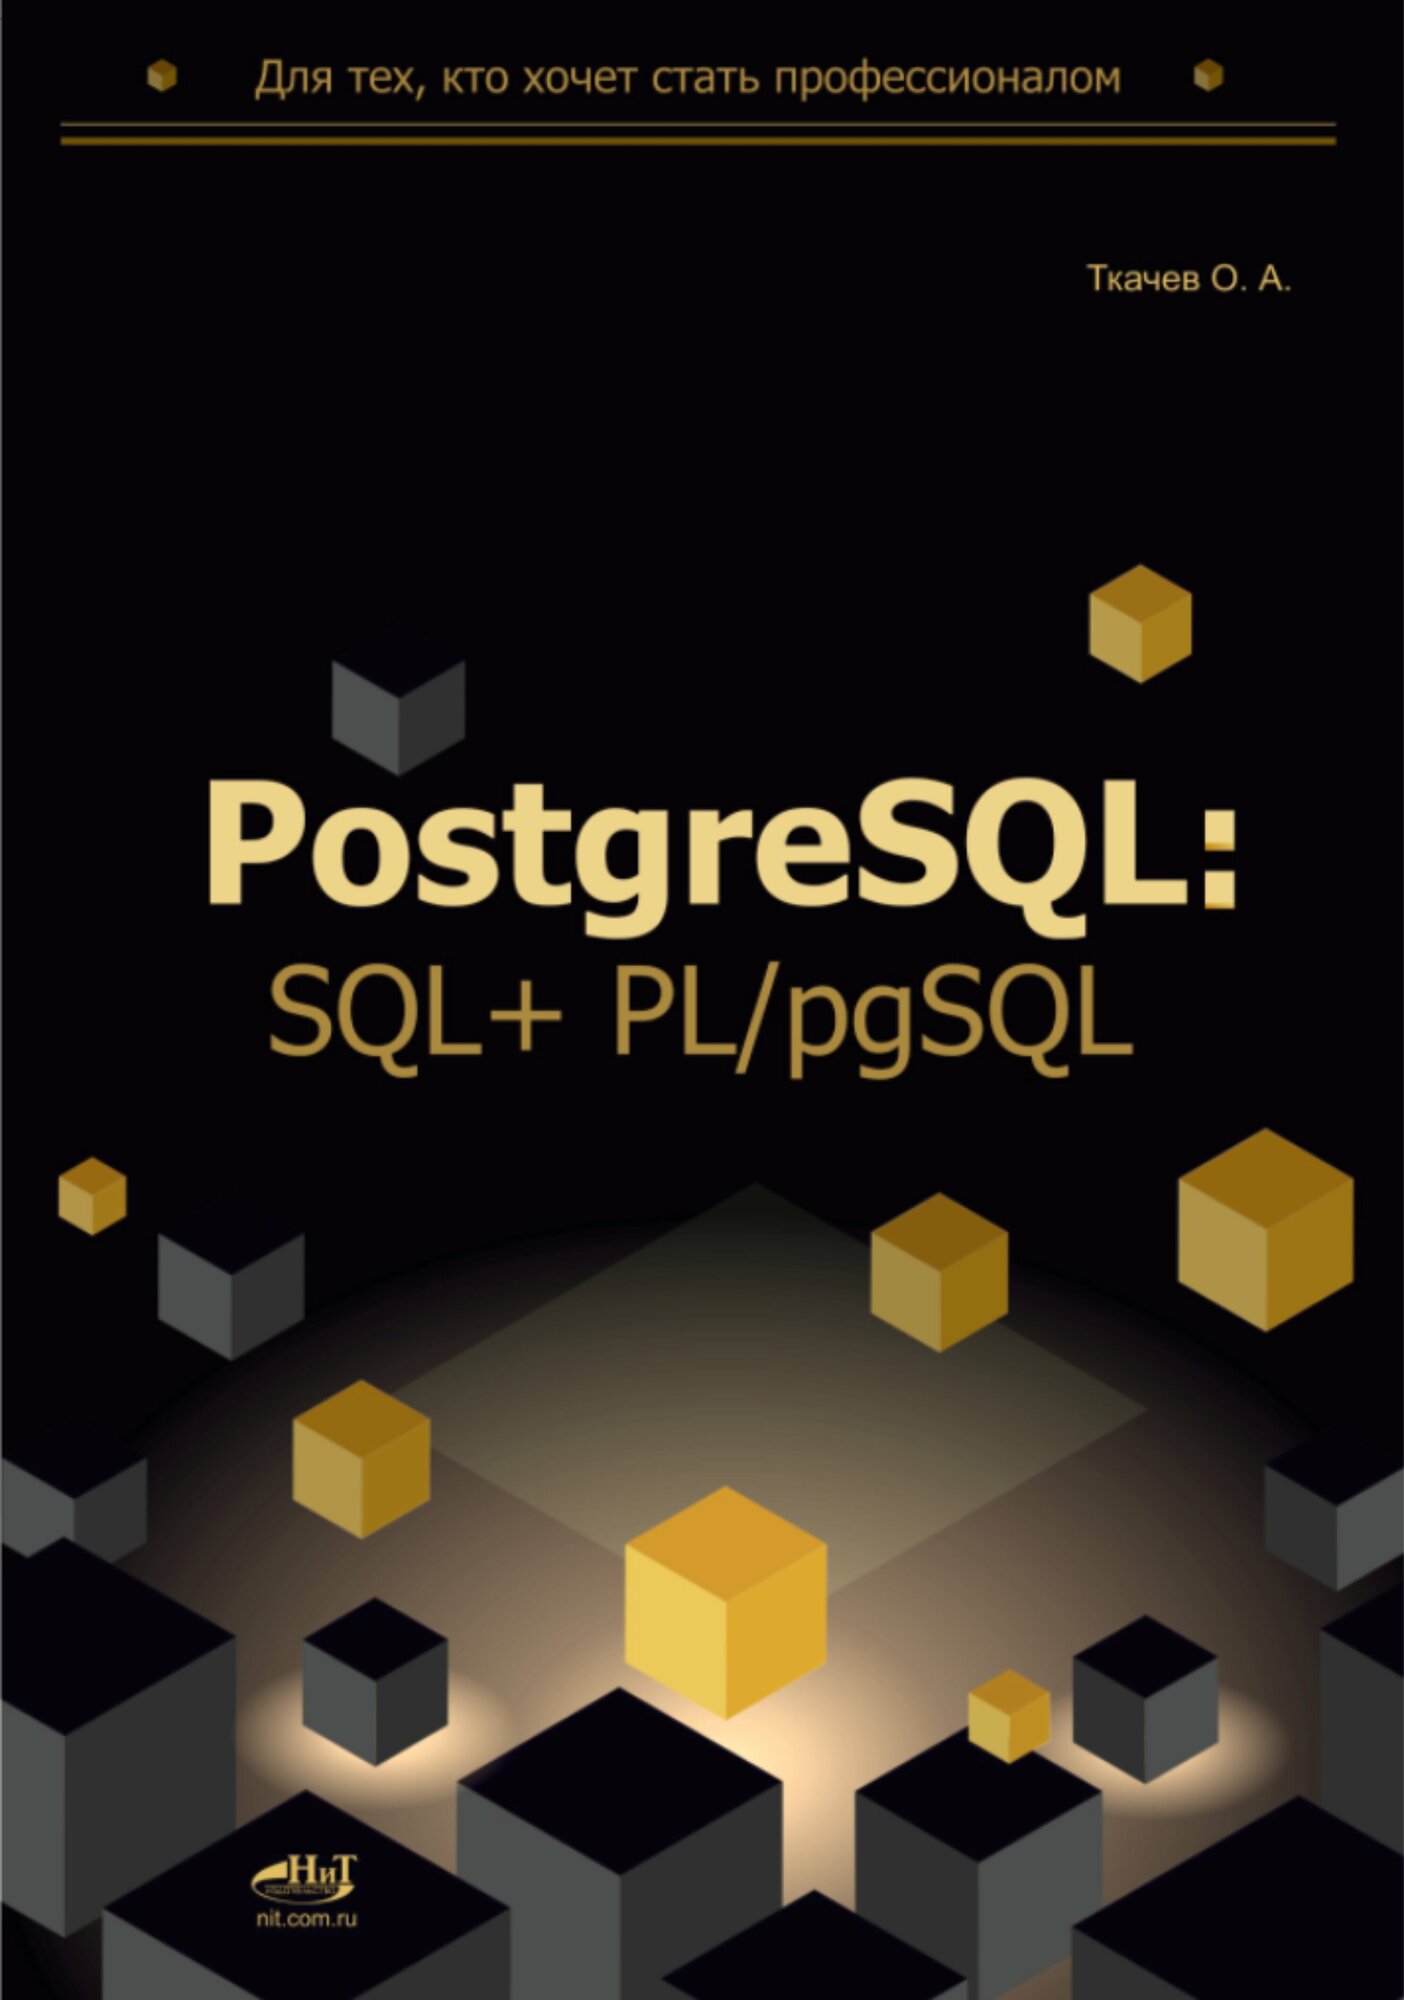 PostgreSQL: SQL + PL/pgSQL для тех, кто хочет стать профессионалом - фото №1